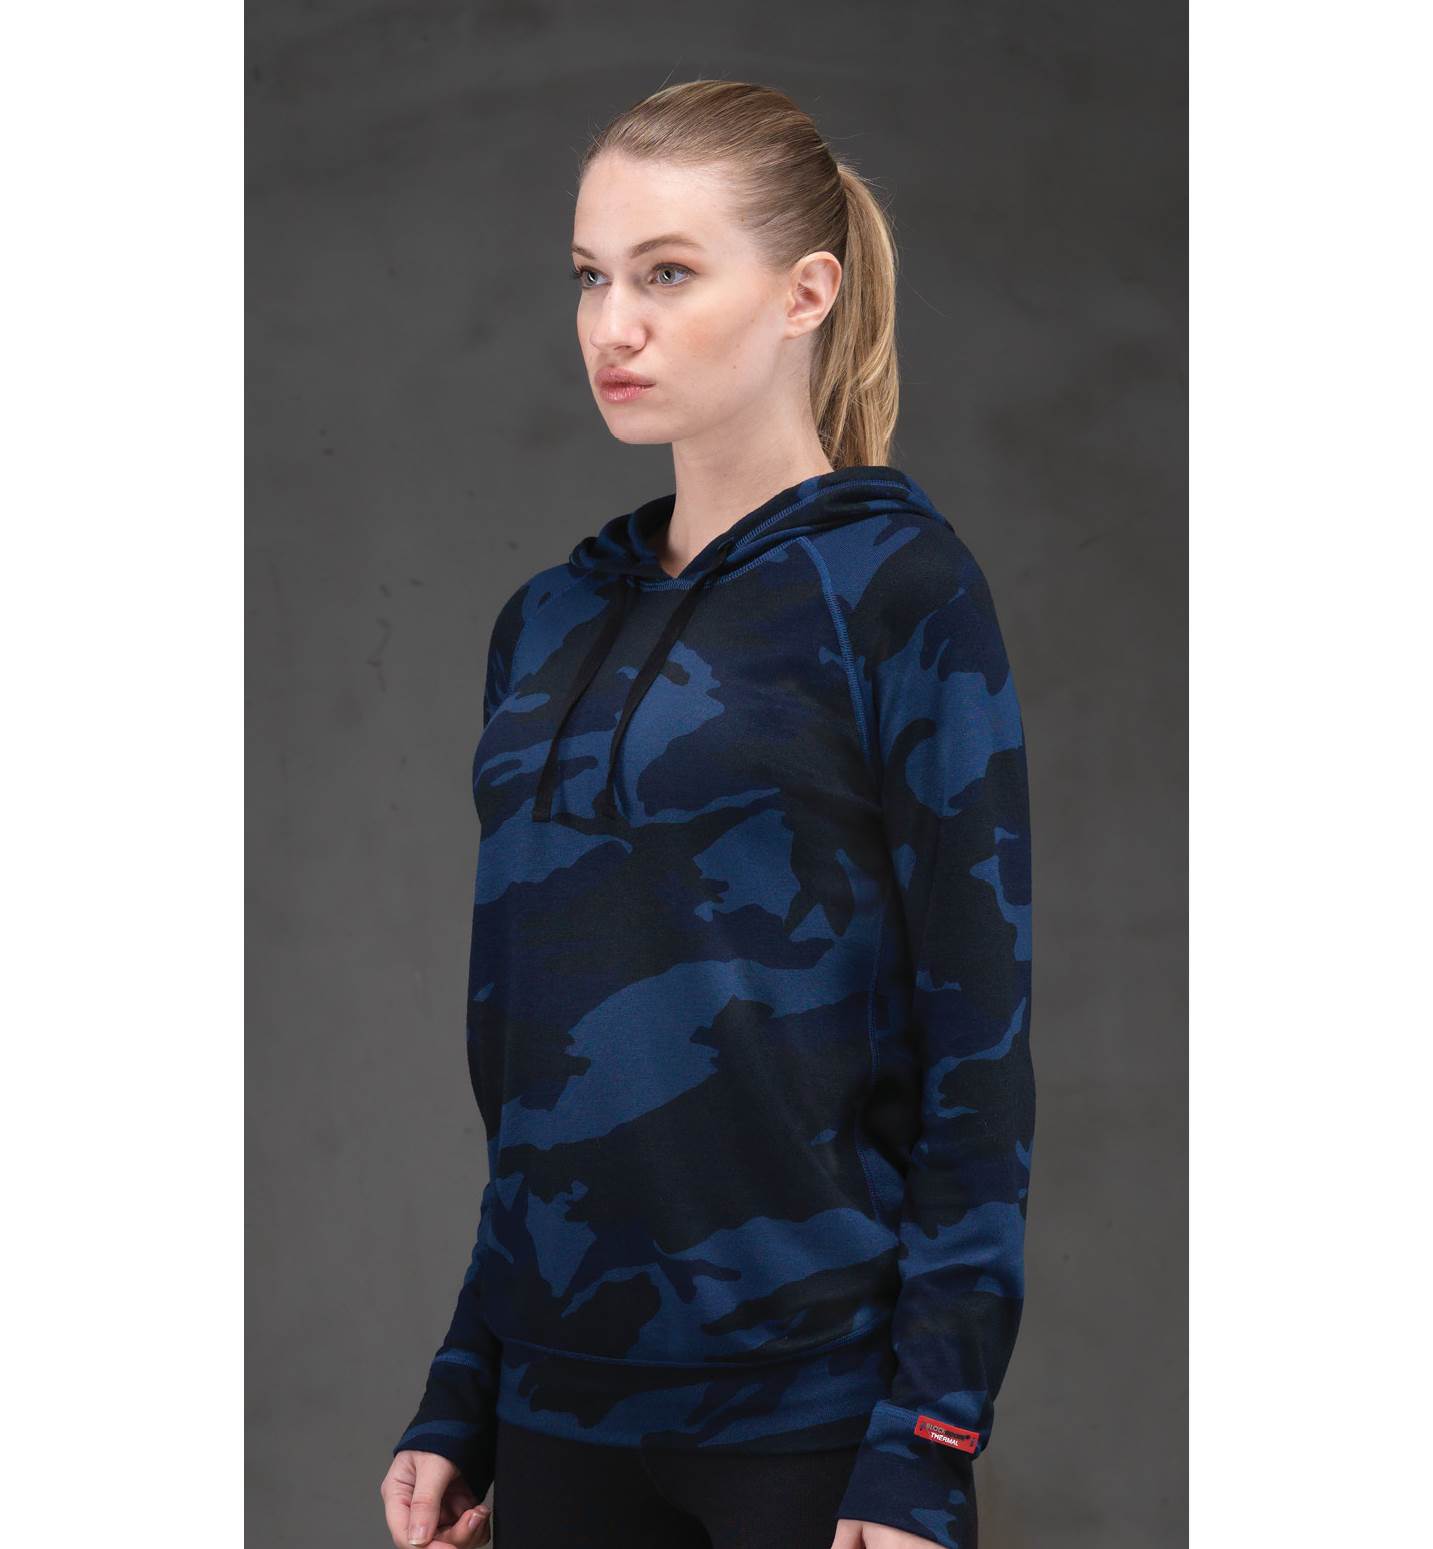 Kadın Termal Kapşonlu Sweatshirt 2. Seviye 6194 - Mavi - 1